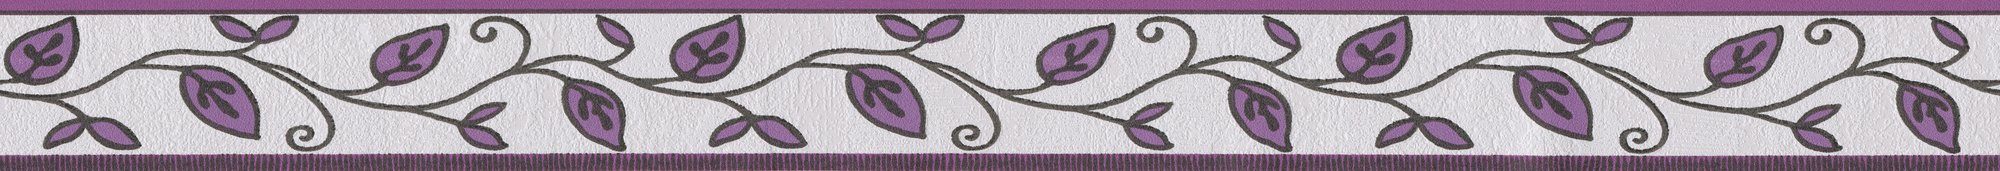 Bordüre Blumenranke Création Retro, A.S. Bordüre Selbstklebend Borders, lila/creme strukturiert, Floral Only